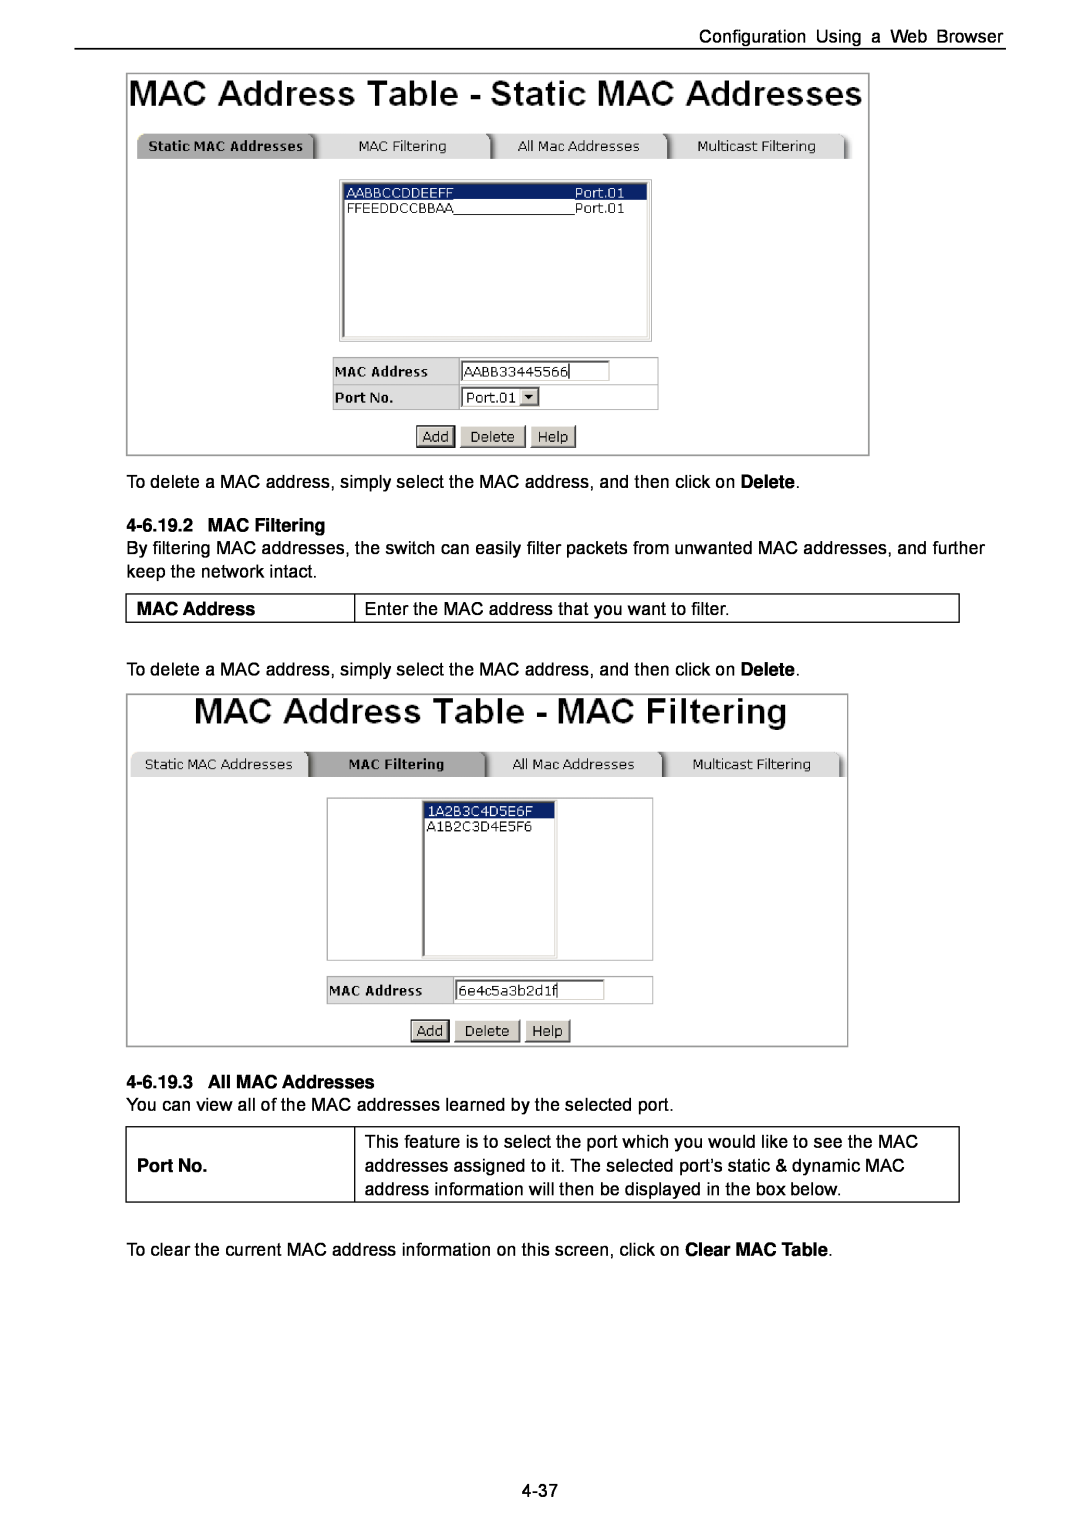 Husky HME-423E, HME-421E user manual MAC Filtering, All MAC Addresses, Port No 